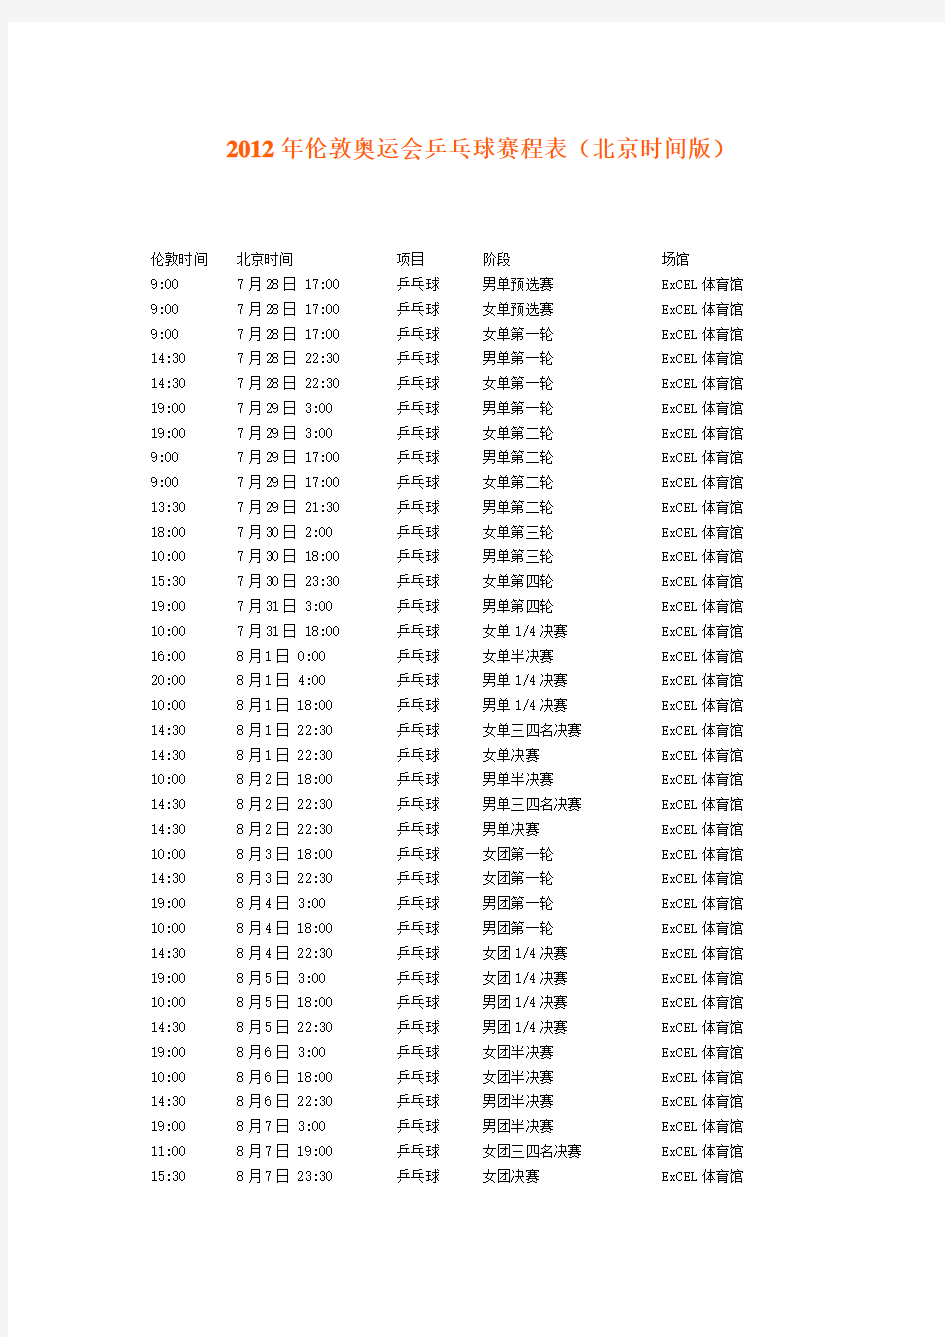 2012年伦敦奥运会乒乓球赛程表(北京时间版)